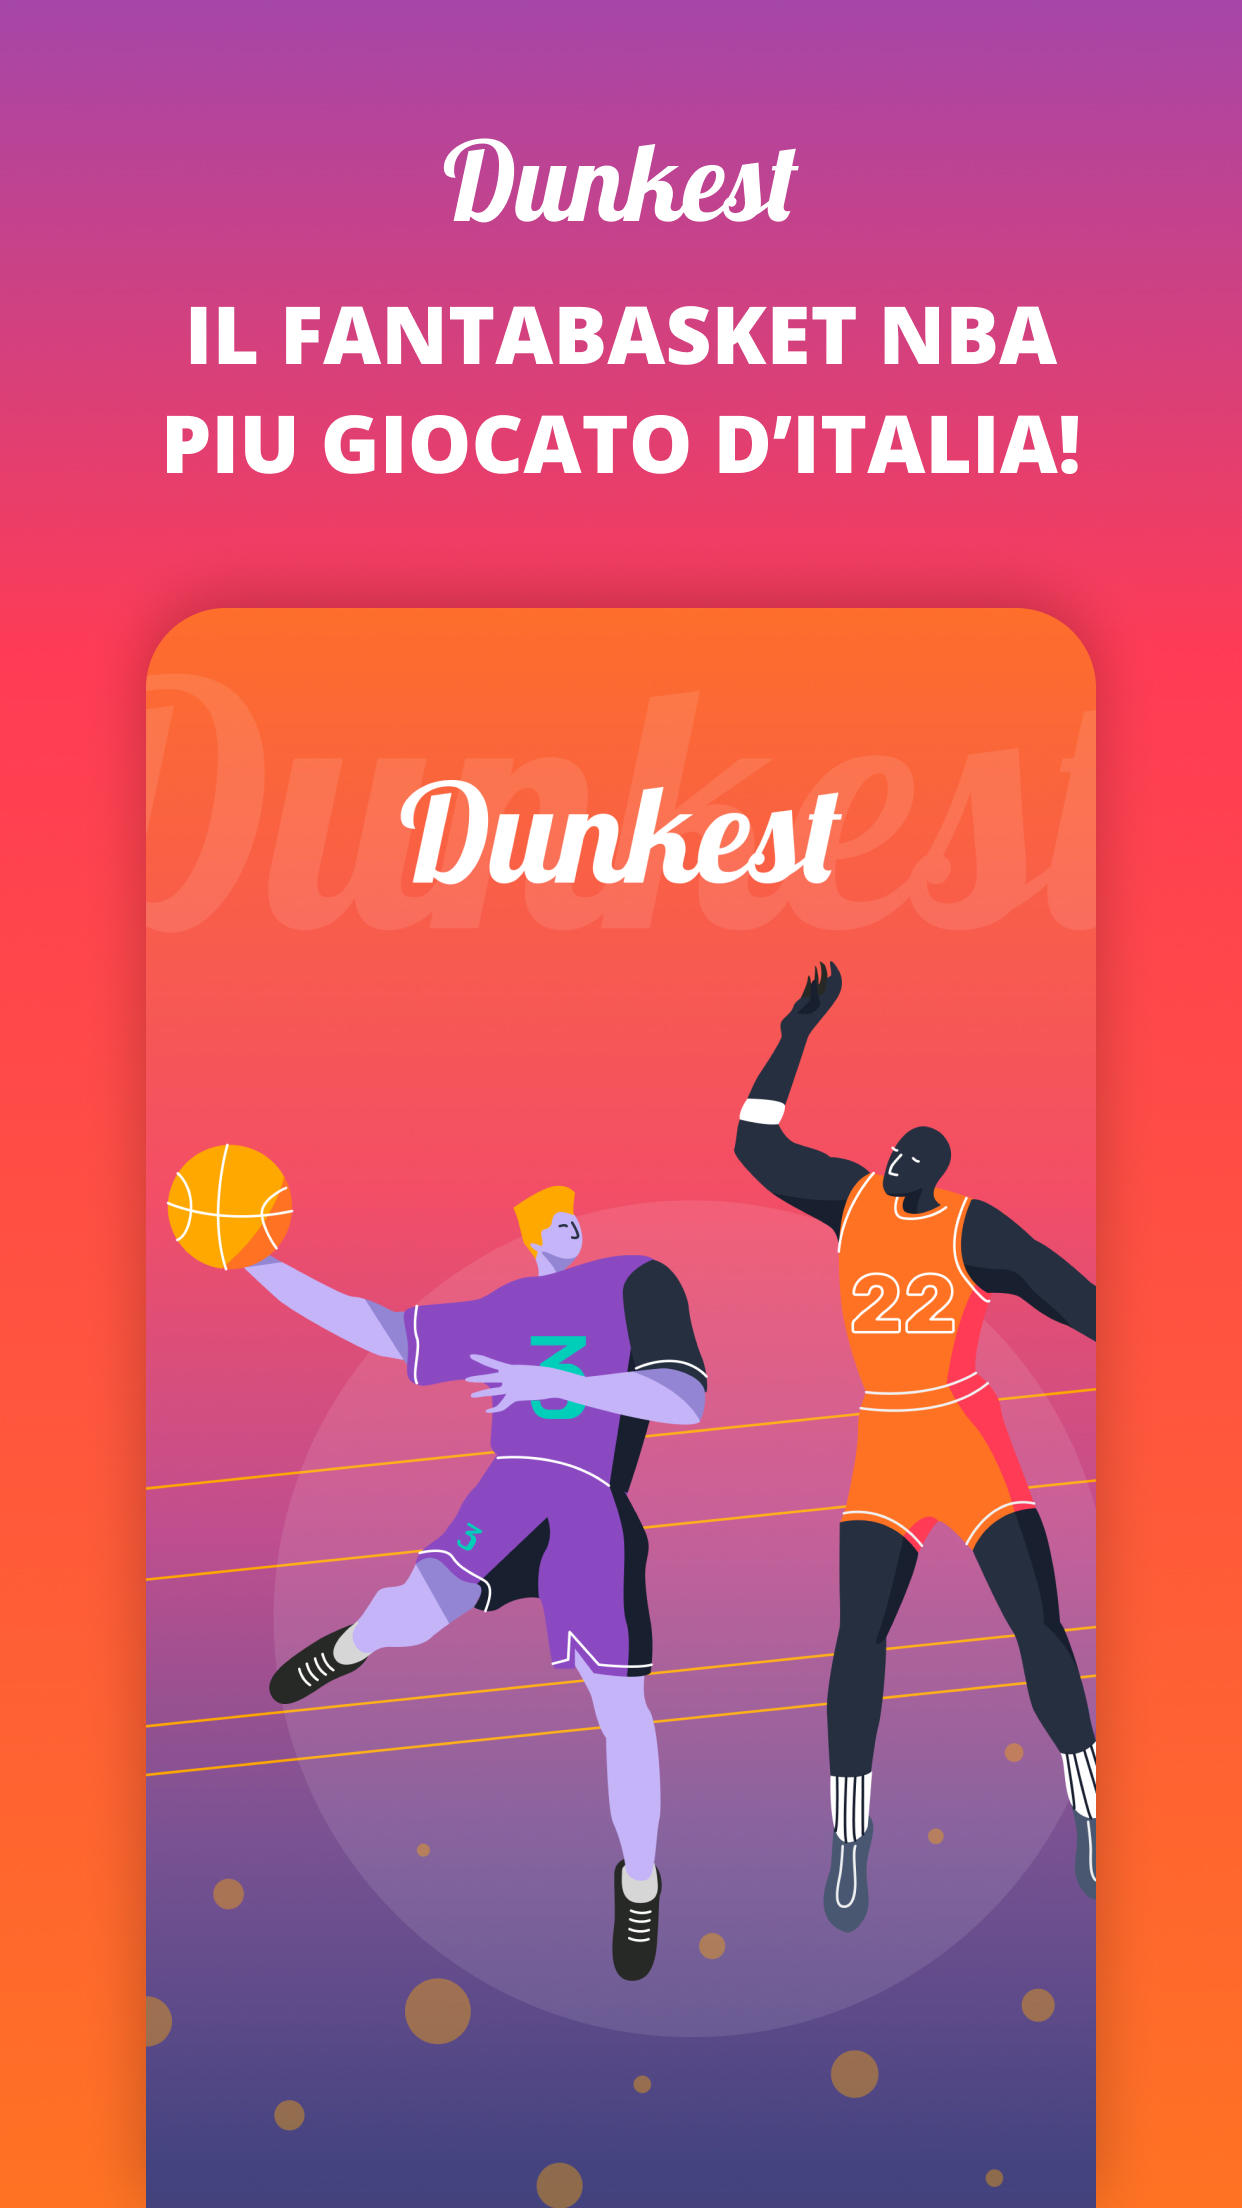 Screenshot 1 of Dunkest - Fantabasket NBA 3.1.5